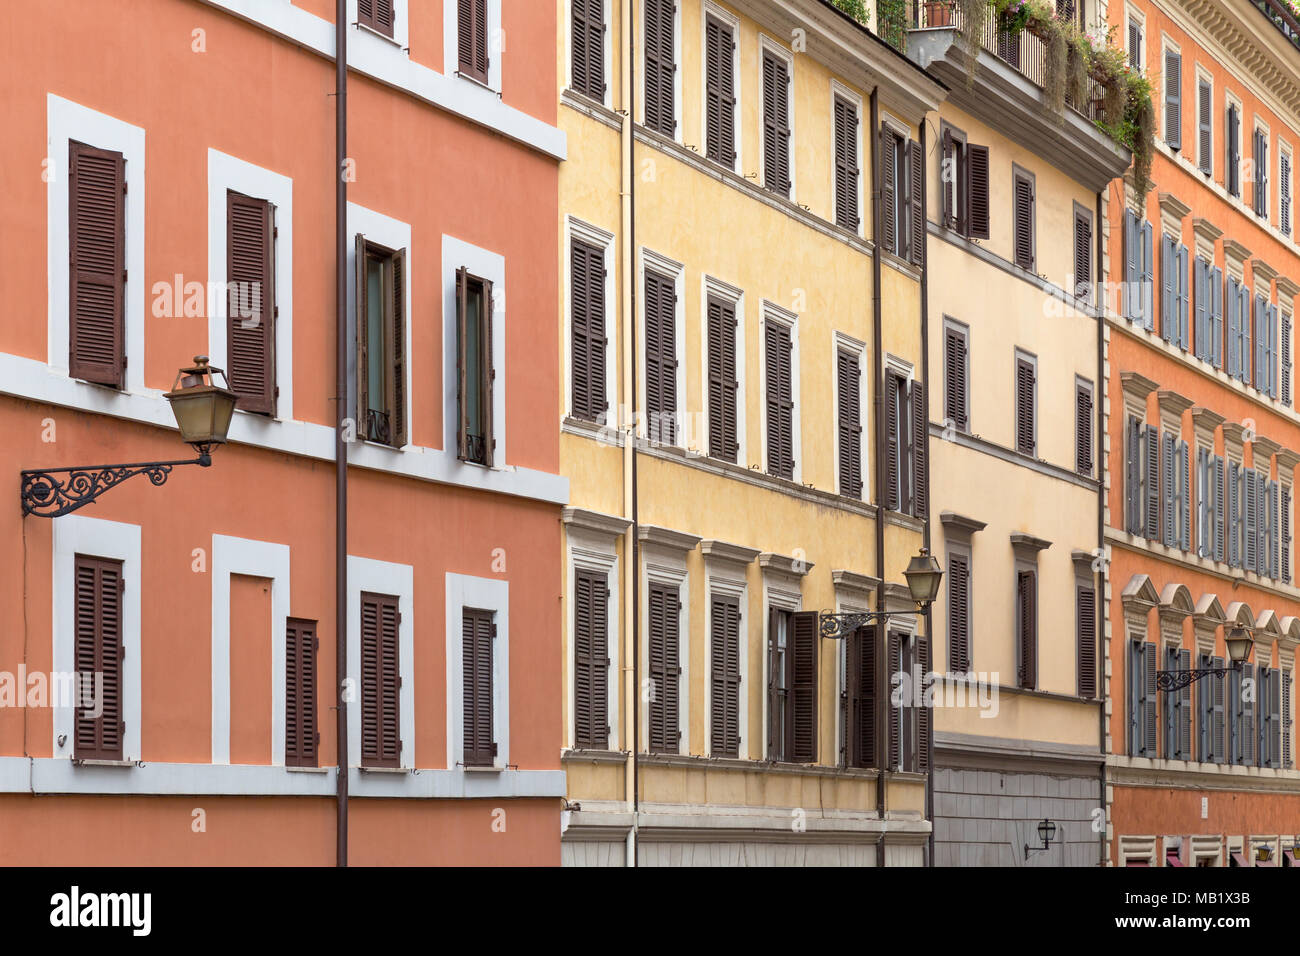 Des tons de jaune et orange ornent les murs des bâtiments colorés dans les rues de Rome, Italie. Banque D'Images